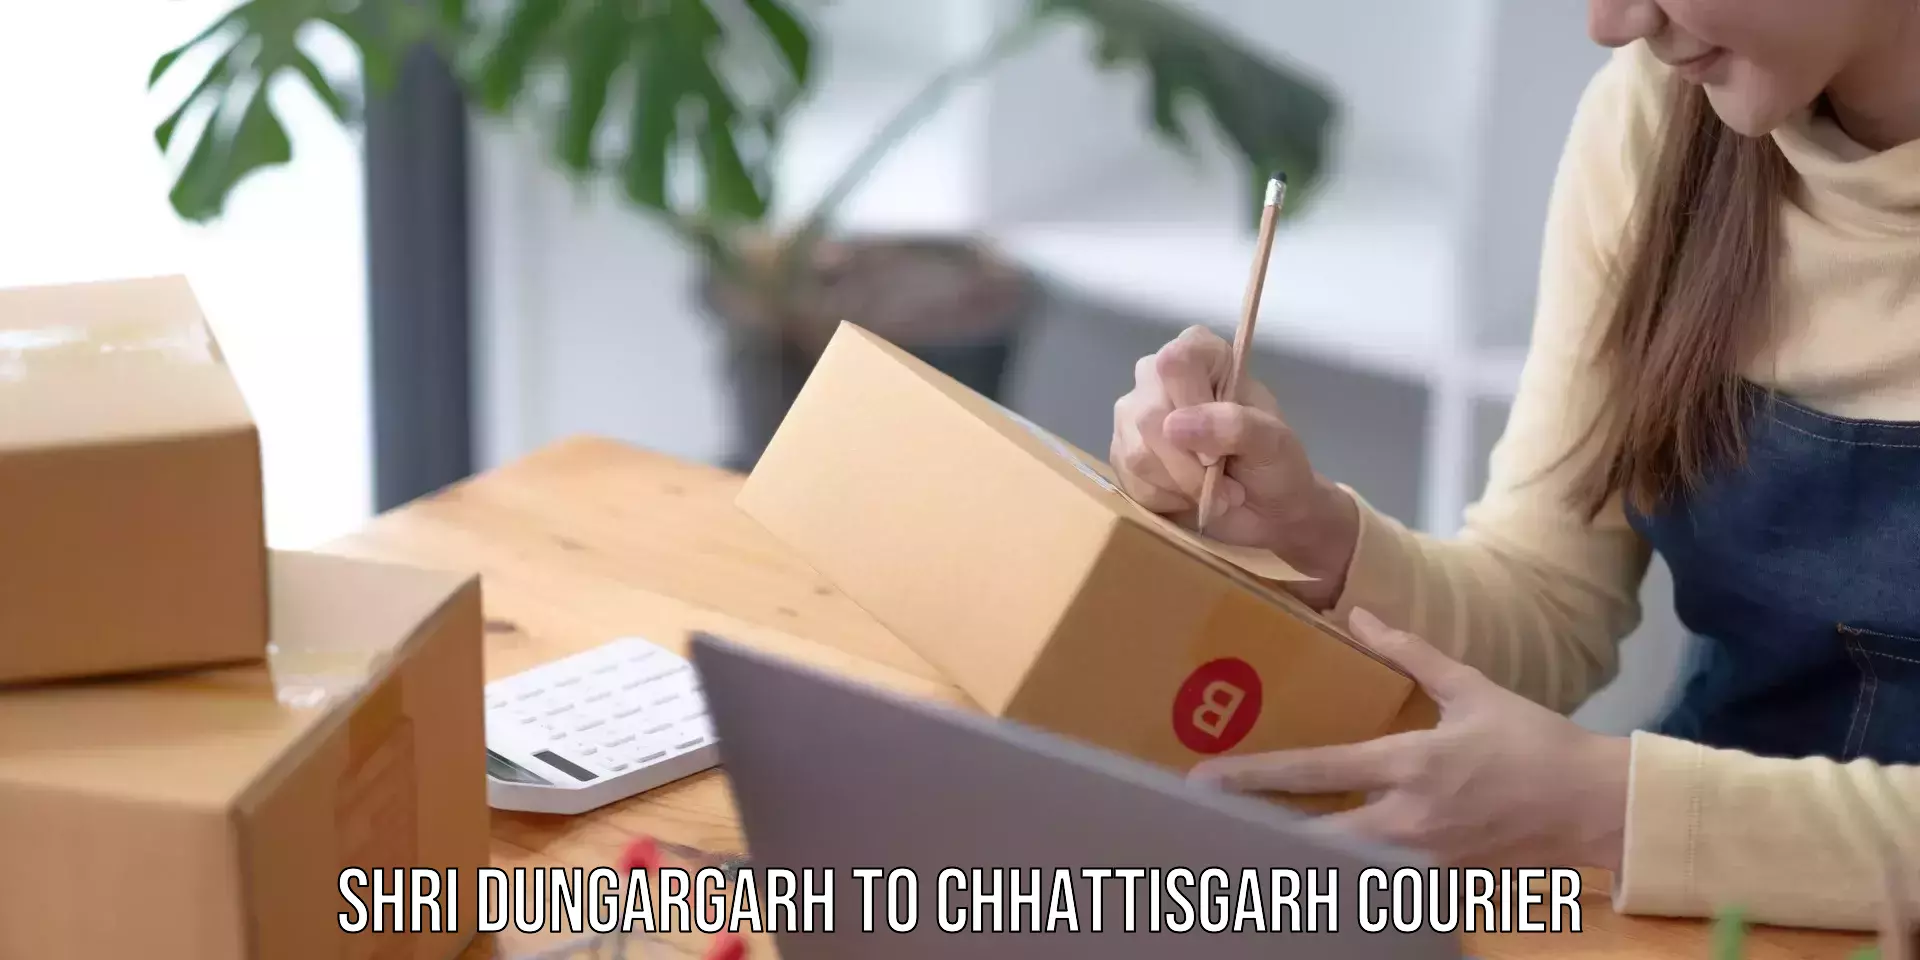 Bulk courier orders Shri Dungargarh to Patna Chhattisgarh